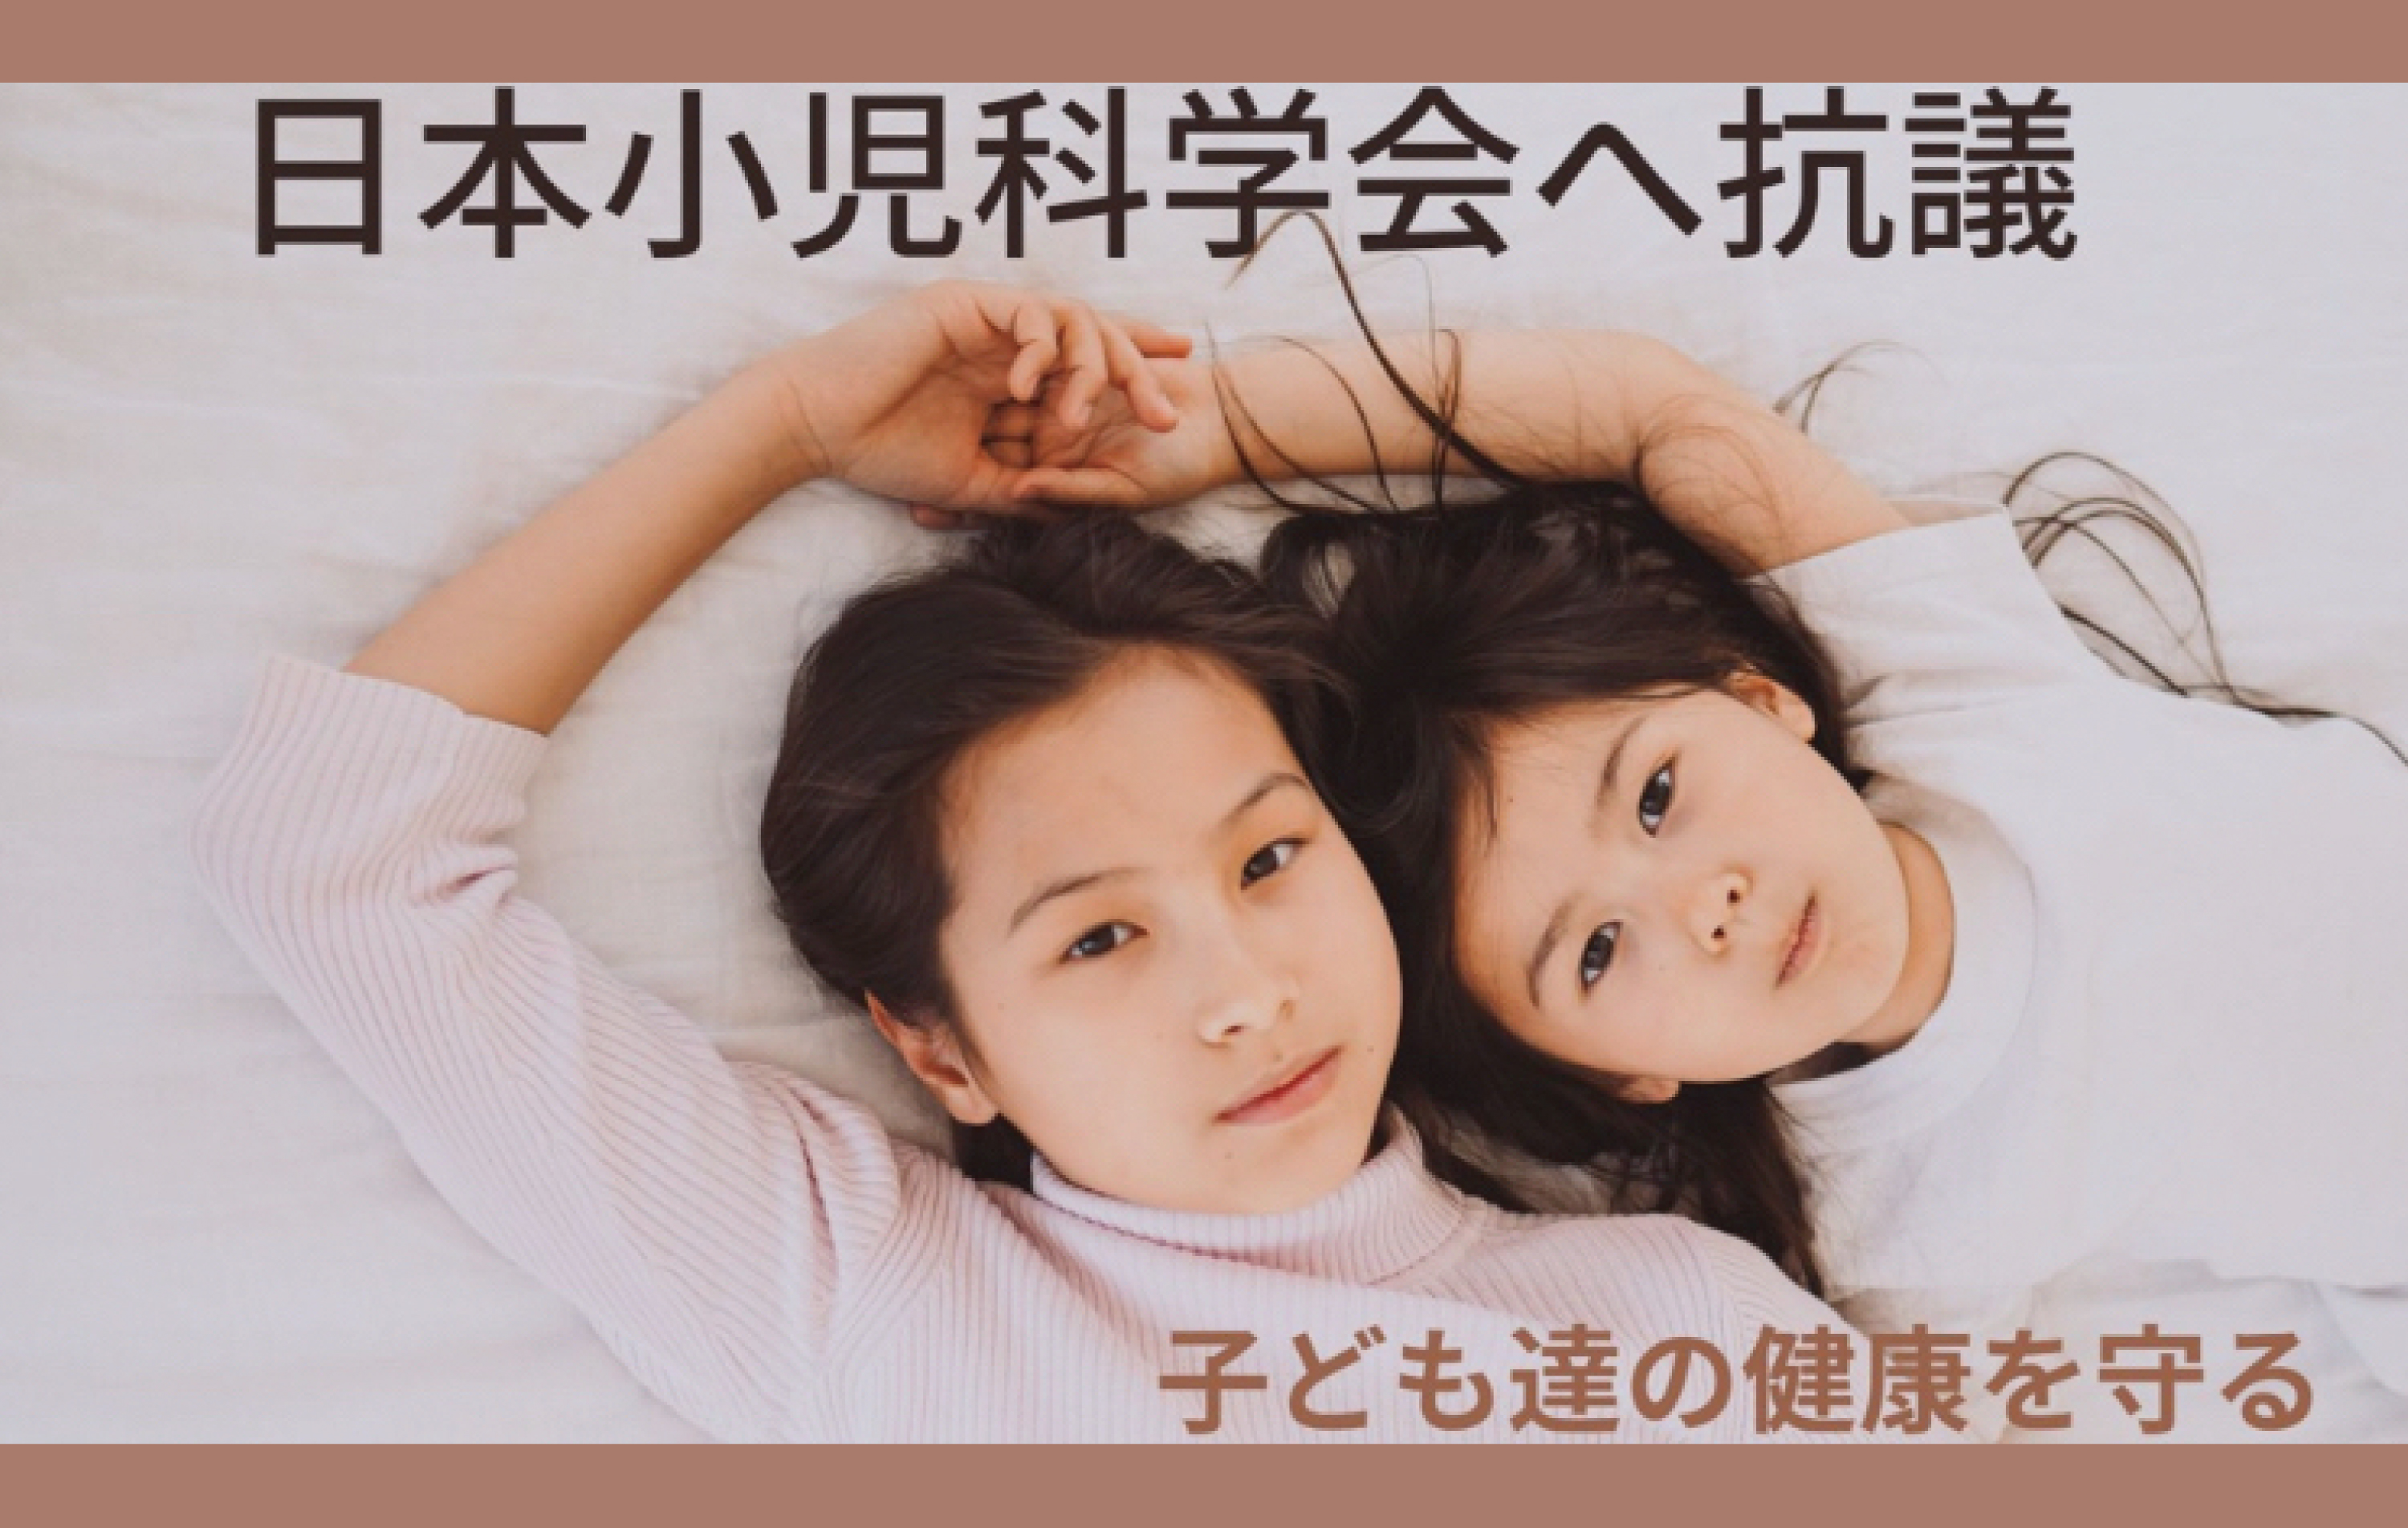 日本小児科学会による
「すべての小児への新型コロナワクチン接種推奨」に強く抗議します！